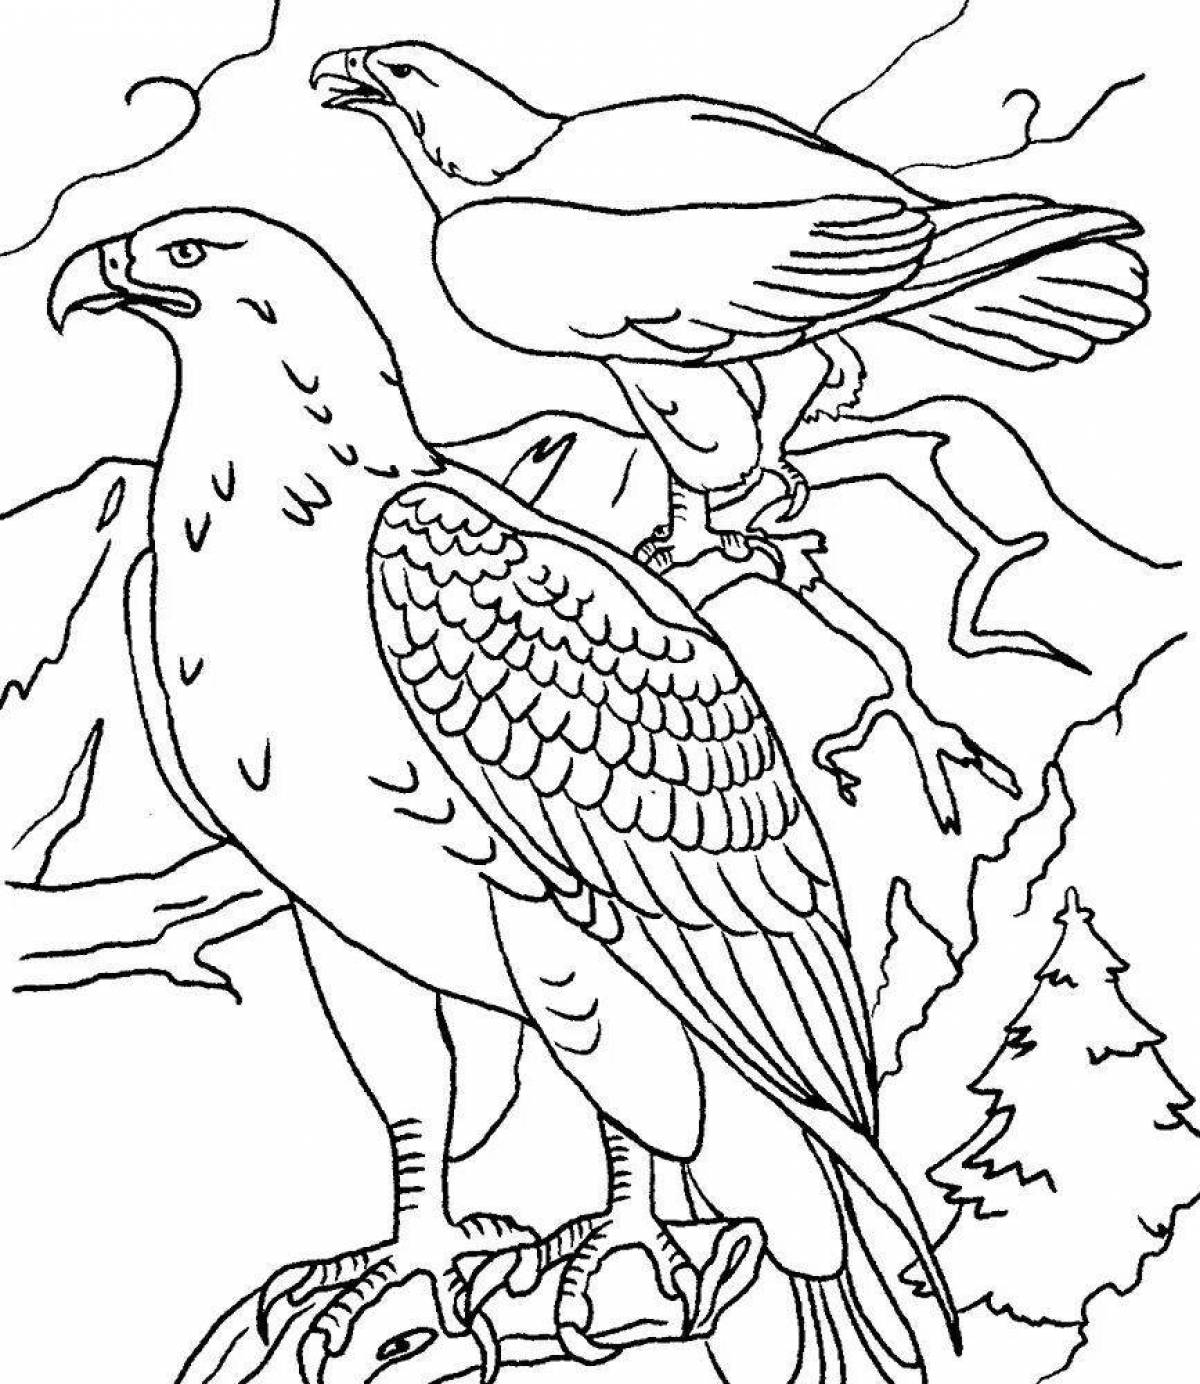 Bird eagle #3